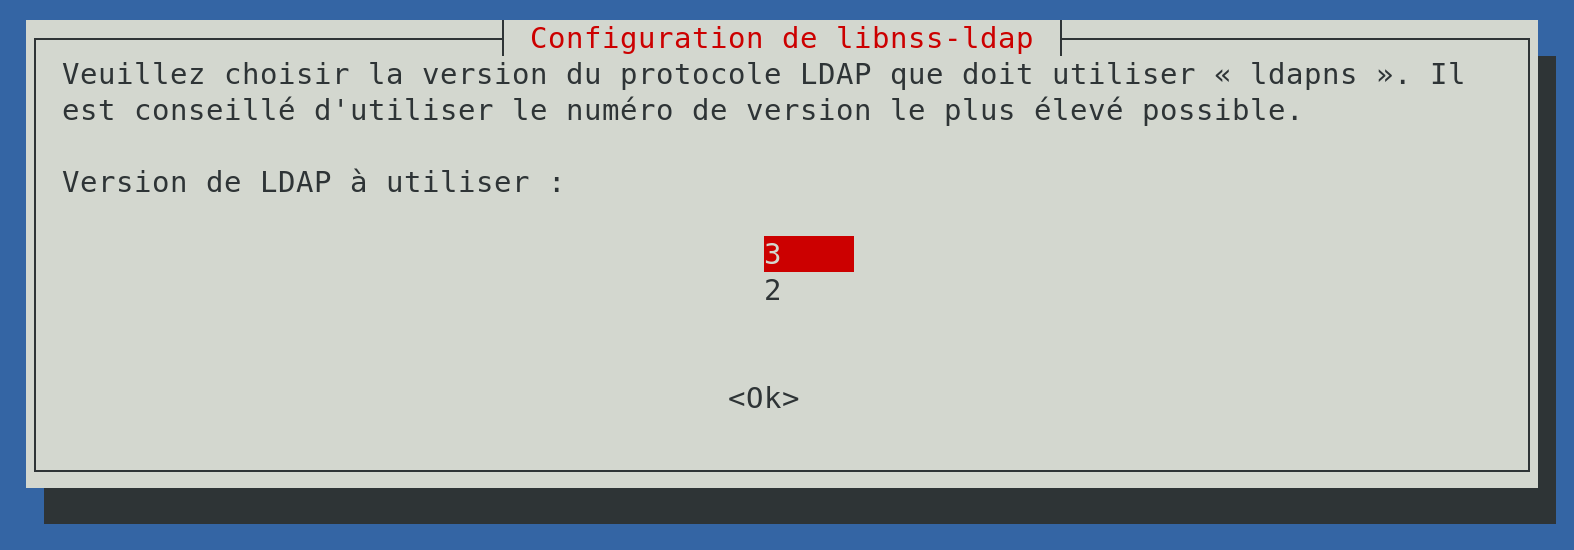 Fichier:LDAP-LIBNSSLDAP3.png